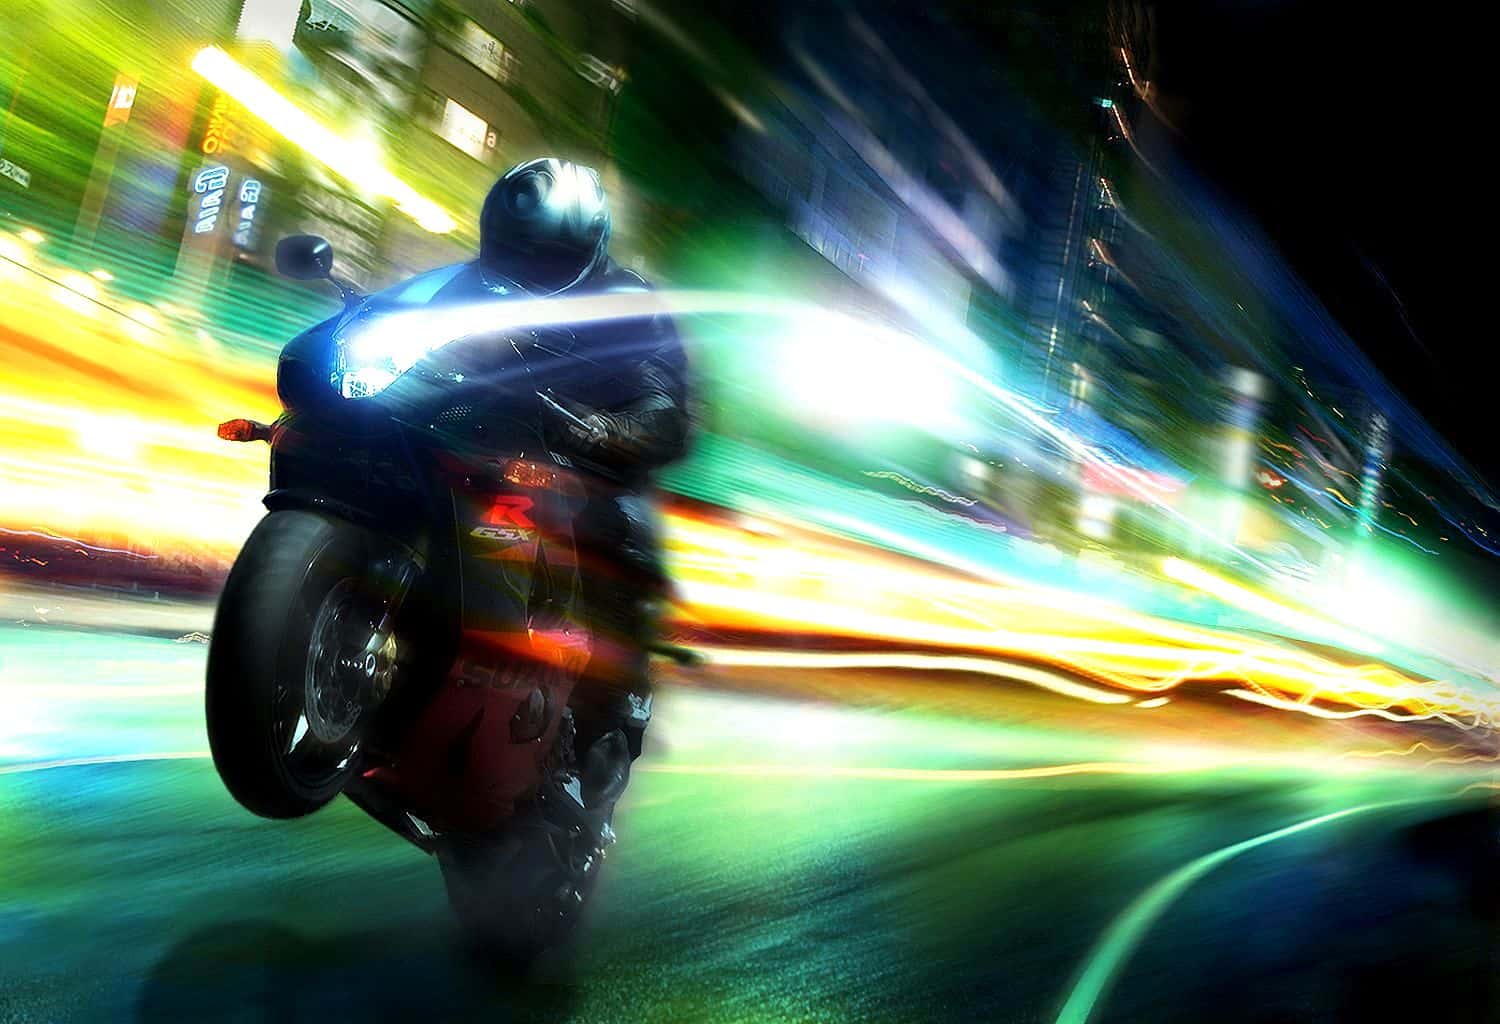 Motorcycle-Speeding | KECO 96.5FM